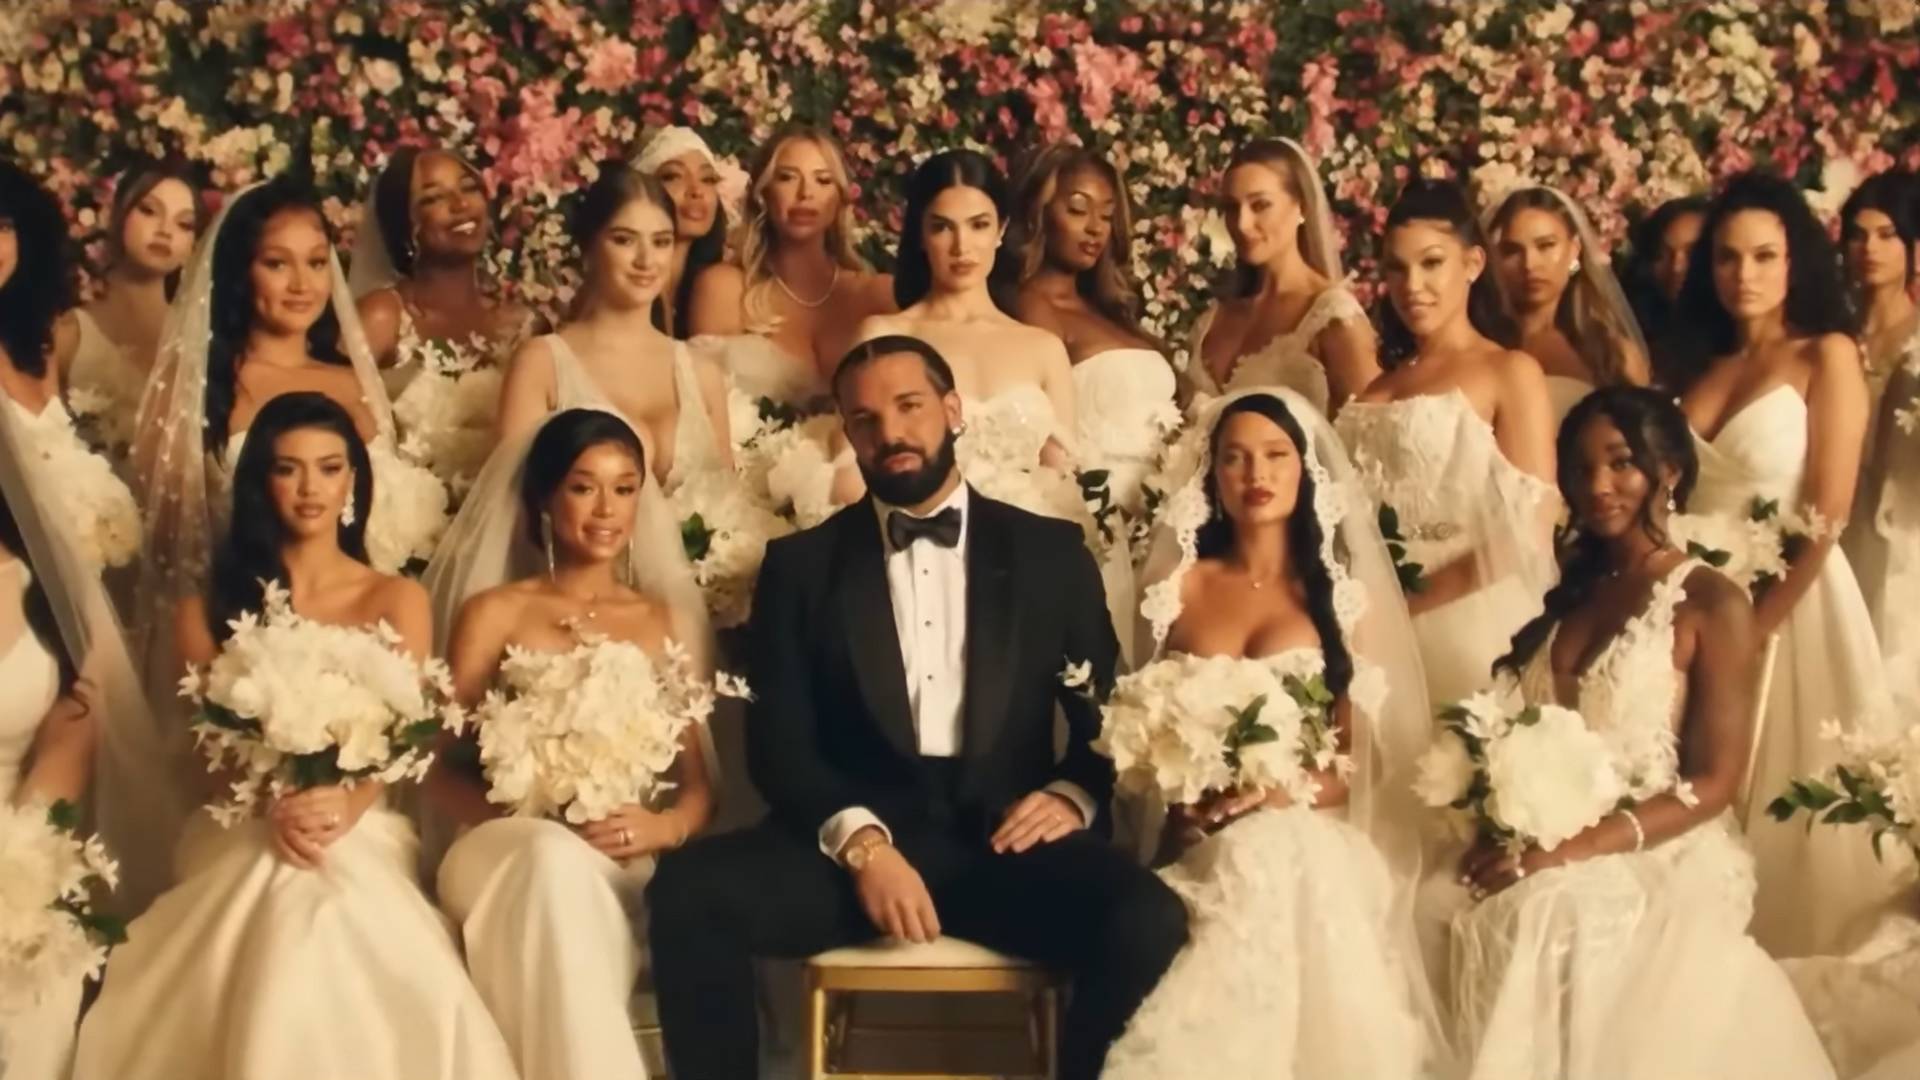 Drake bez zapowiedzi wydał kolejny album. W nowym klipie bierze ślub z 23 modelkami